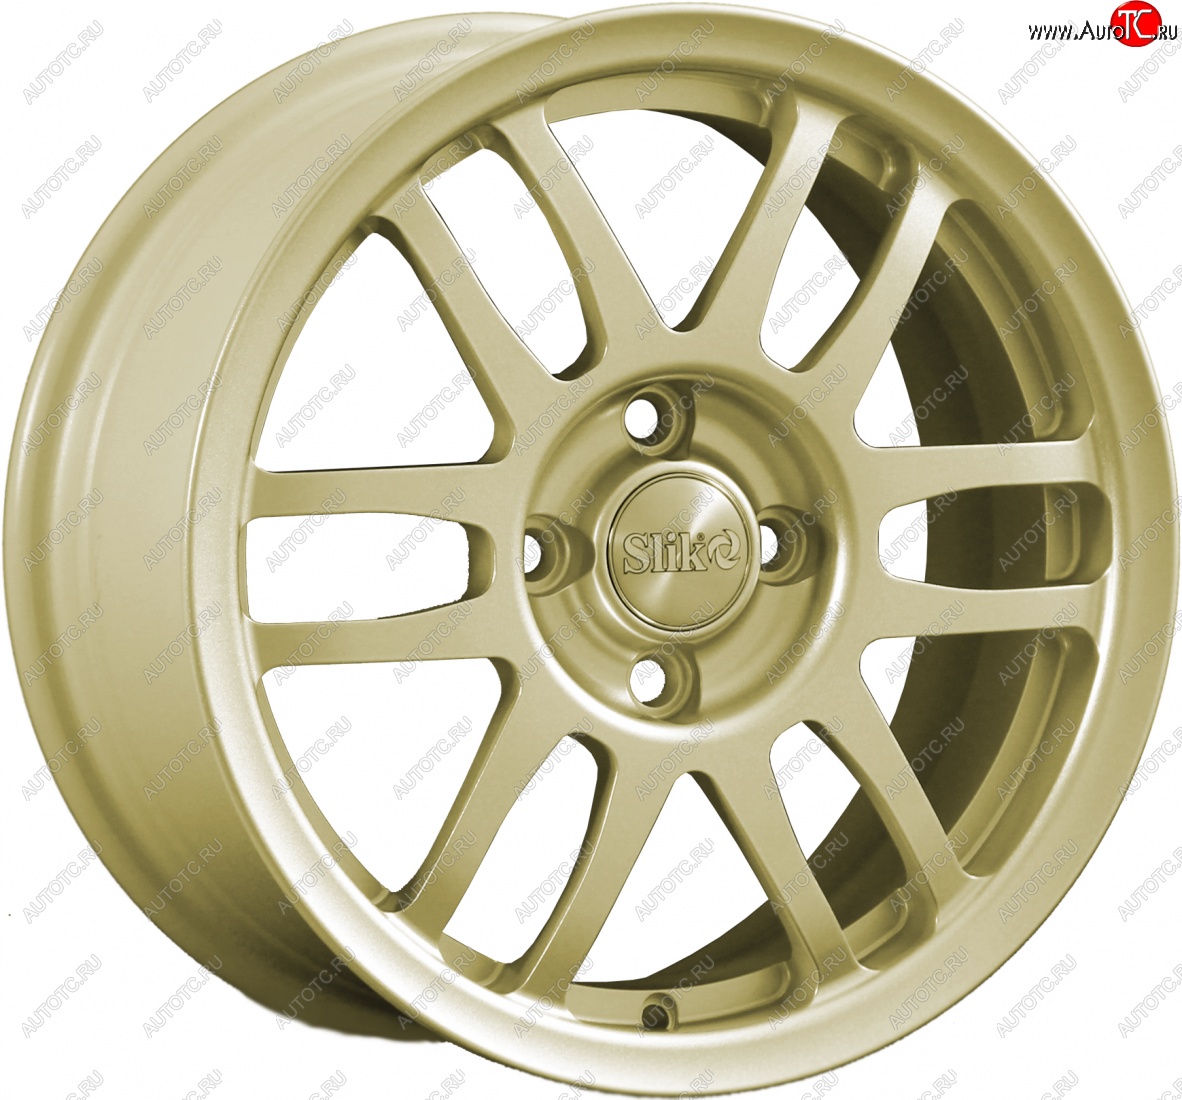 11 899 р. Кованый диск Slik Classik 6.5x15 (Металлик золотой) Nissan Latio N17 седан правый руль дорестайлинг (2012-2014) 4x100.0xDIA60.0xET40.0 (Цвет: Металлик золотой)